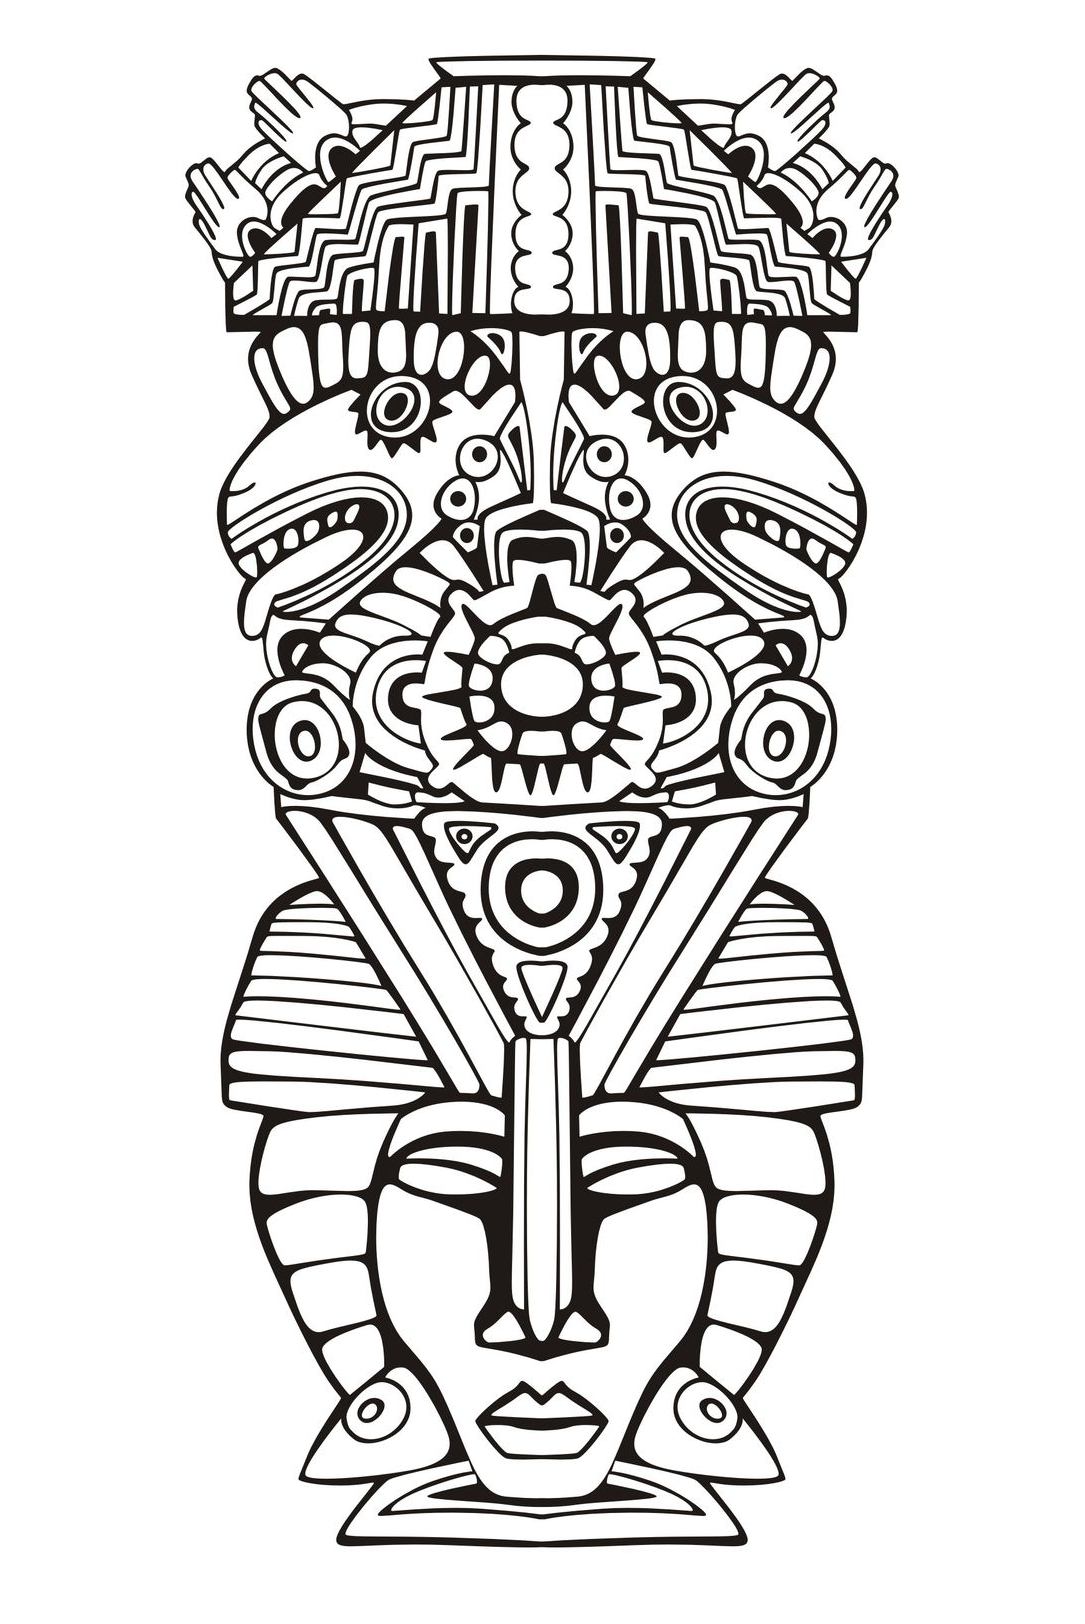 Disegni da colorare per adulti : Maya, Aztechi e Incas - 11, Artista : Rocich   Fonte : 123rf